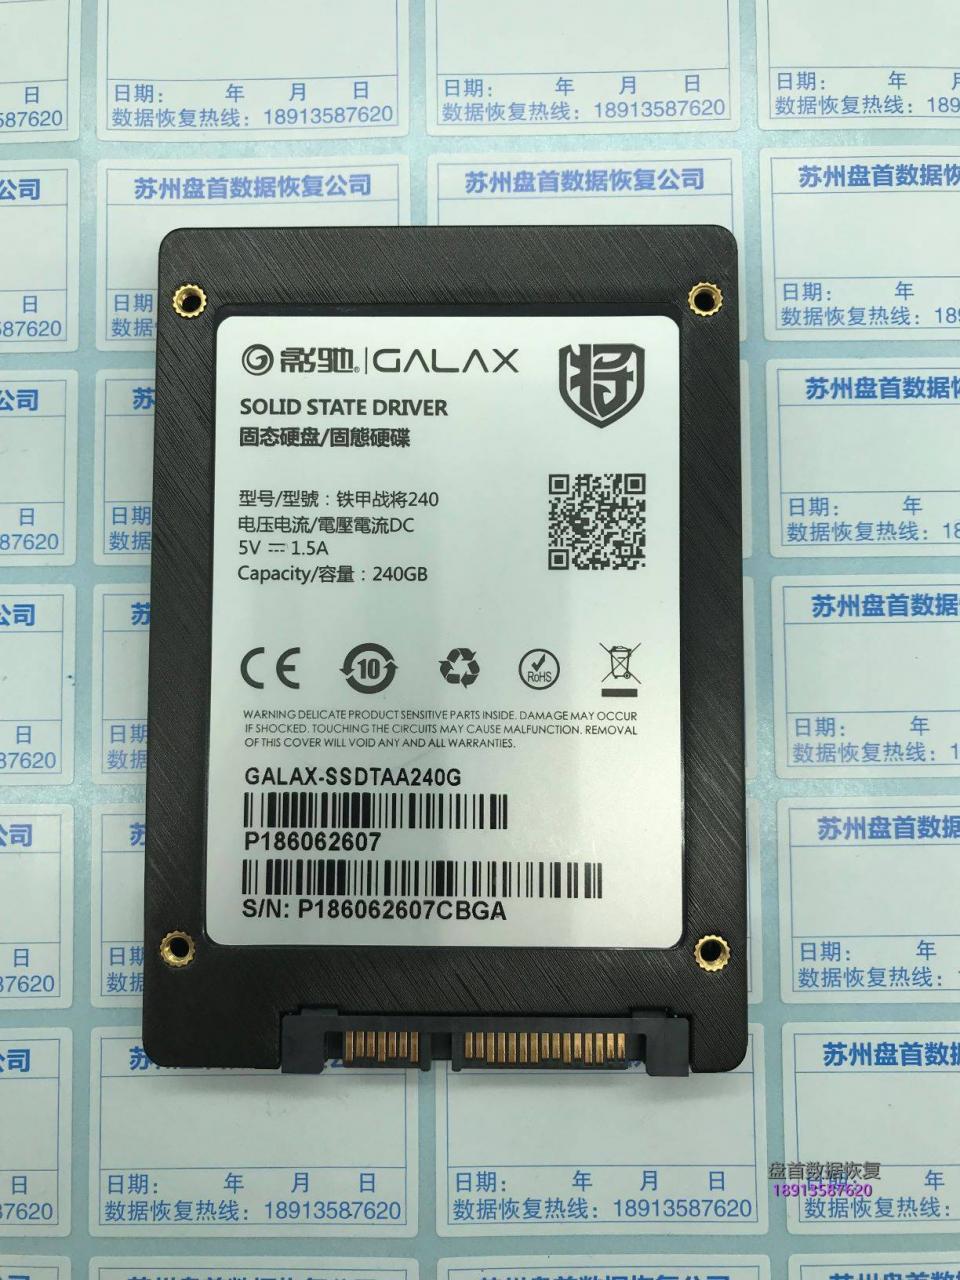 成功修复影驰GALAX-SSDTAA240G固态硬盘损坏无法读取识别成SATAFIRM S11主控PS3111